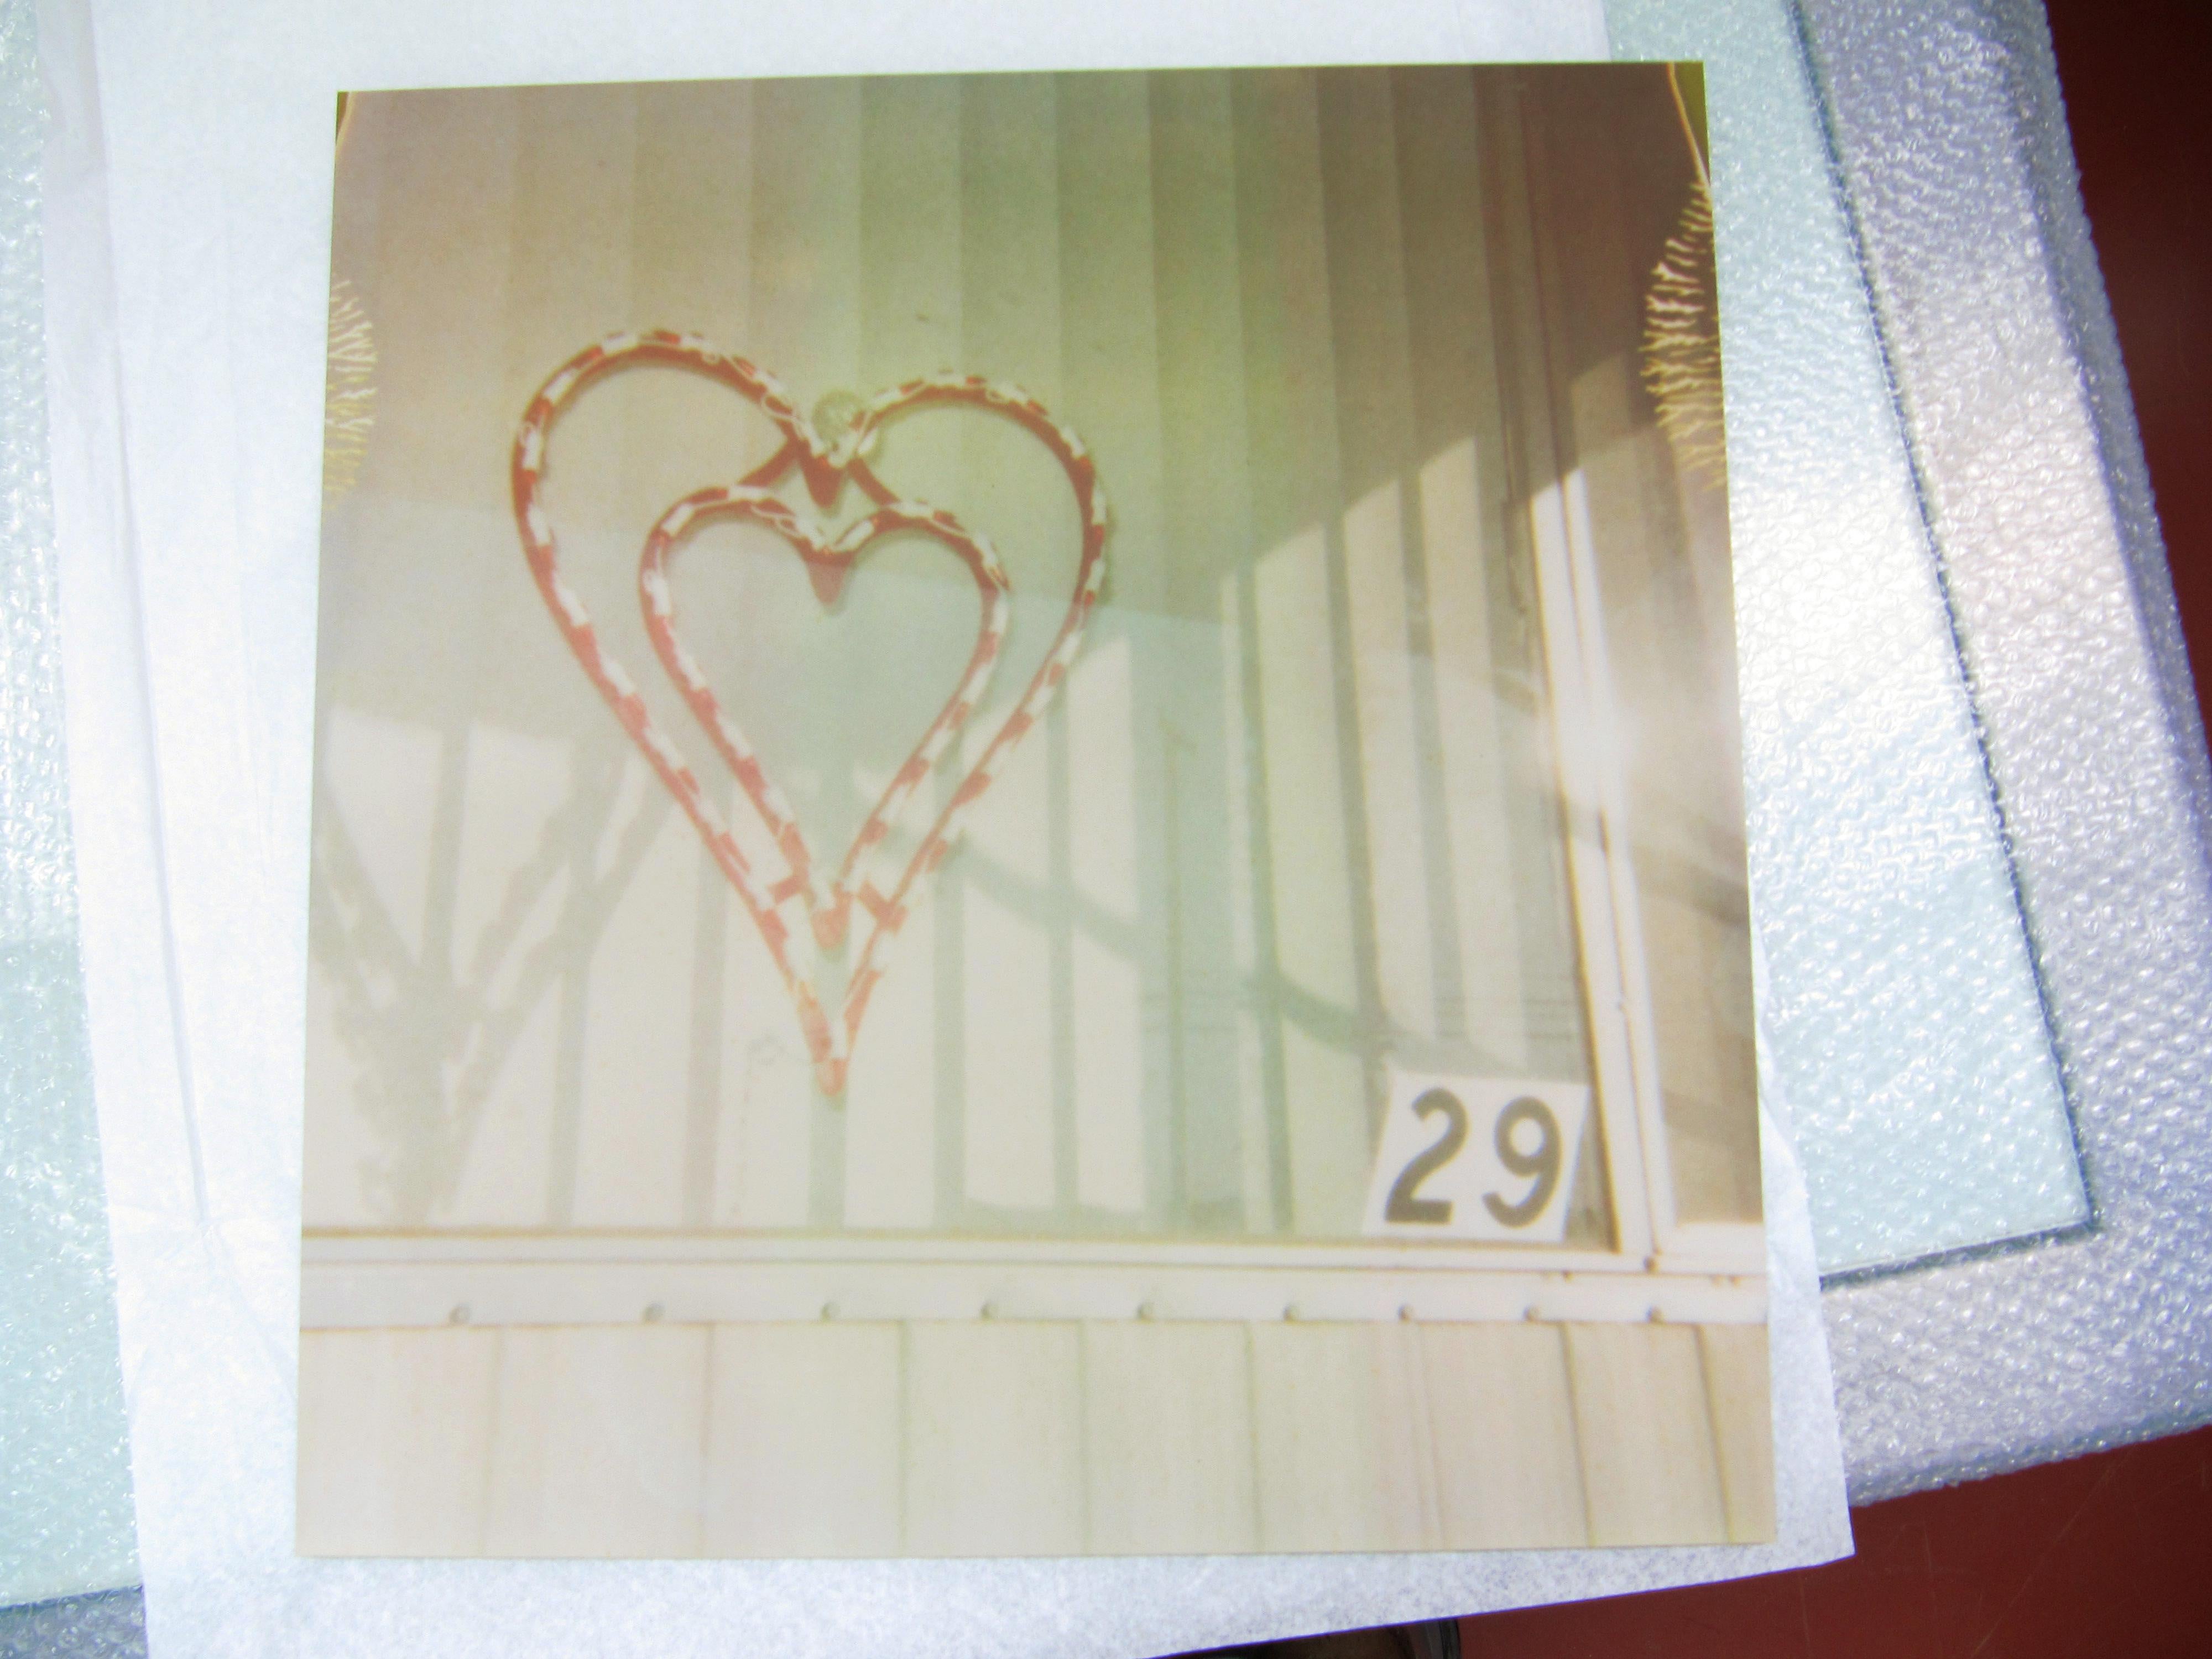 Home, sweet 29 (anniversaire d'Oxana) - faisant partie du projet 29 Palms, CA - Photograph de Stefanie Schneider